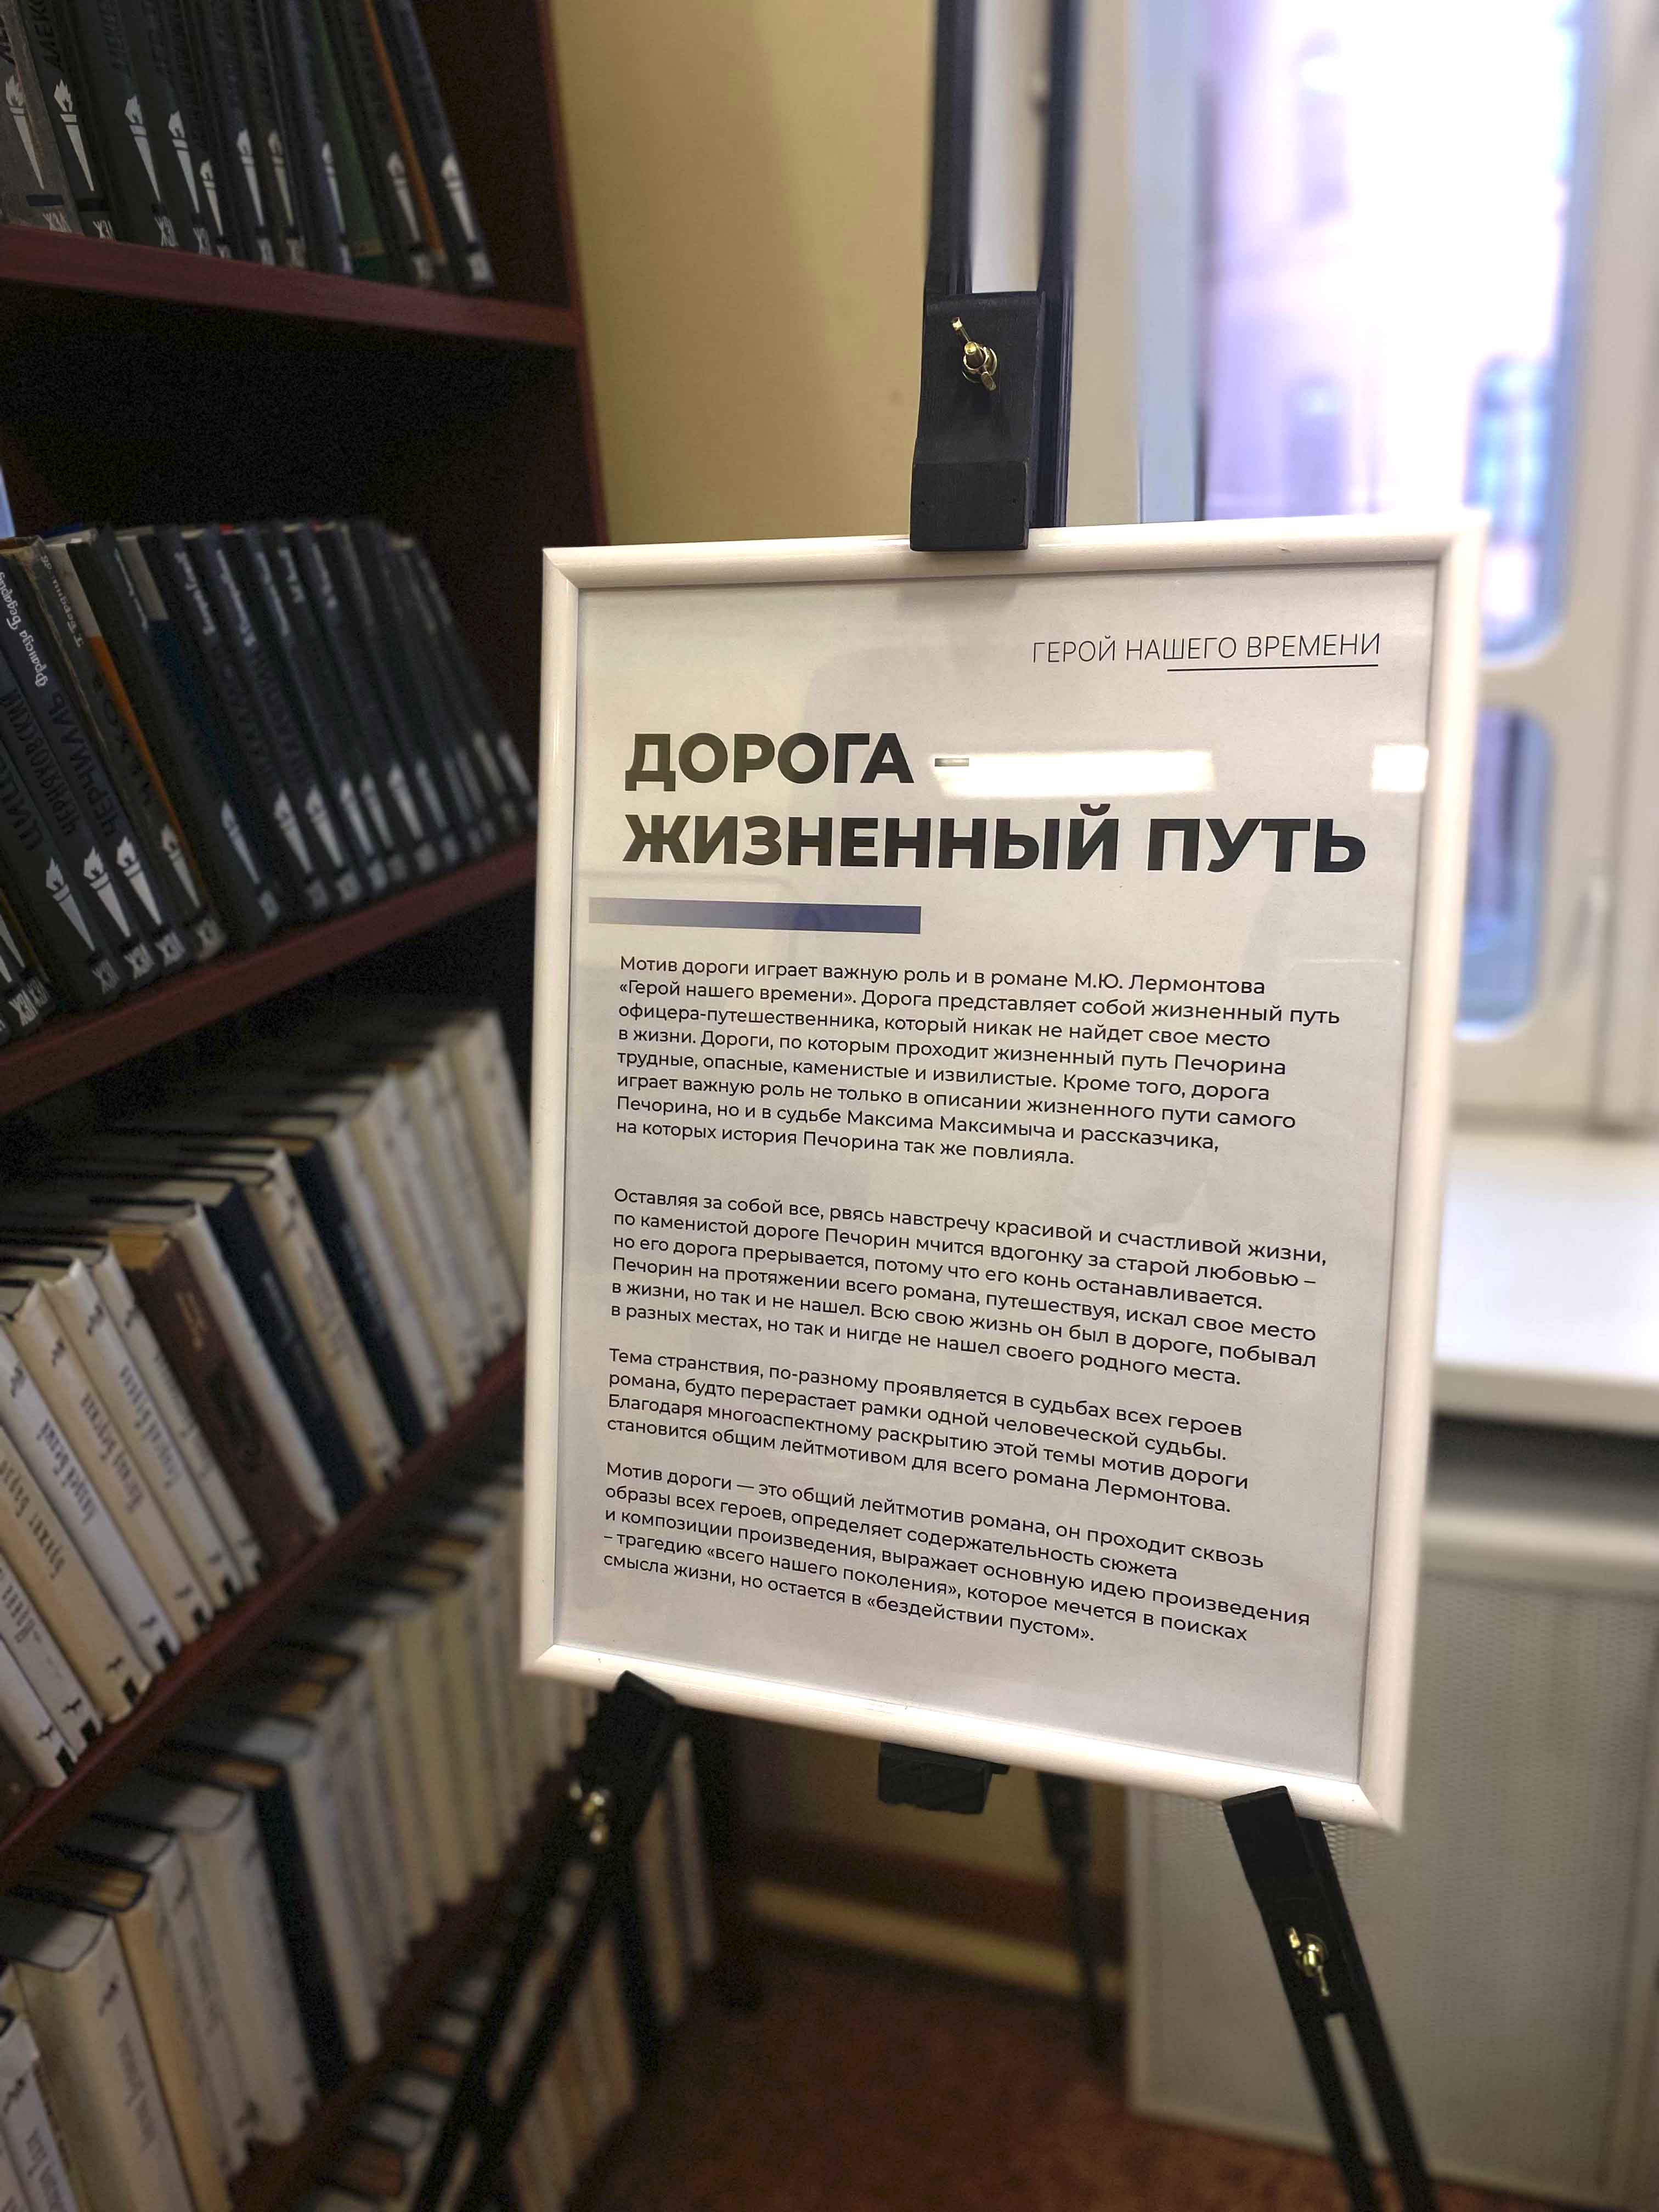 В Центральной районной библиотеке имени А.С. Пушкина прошла выставка, посвященная дорогам